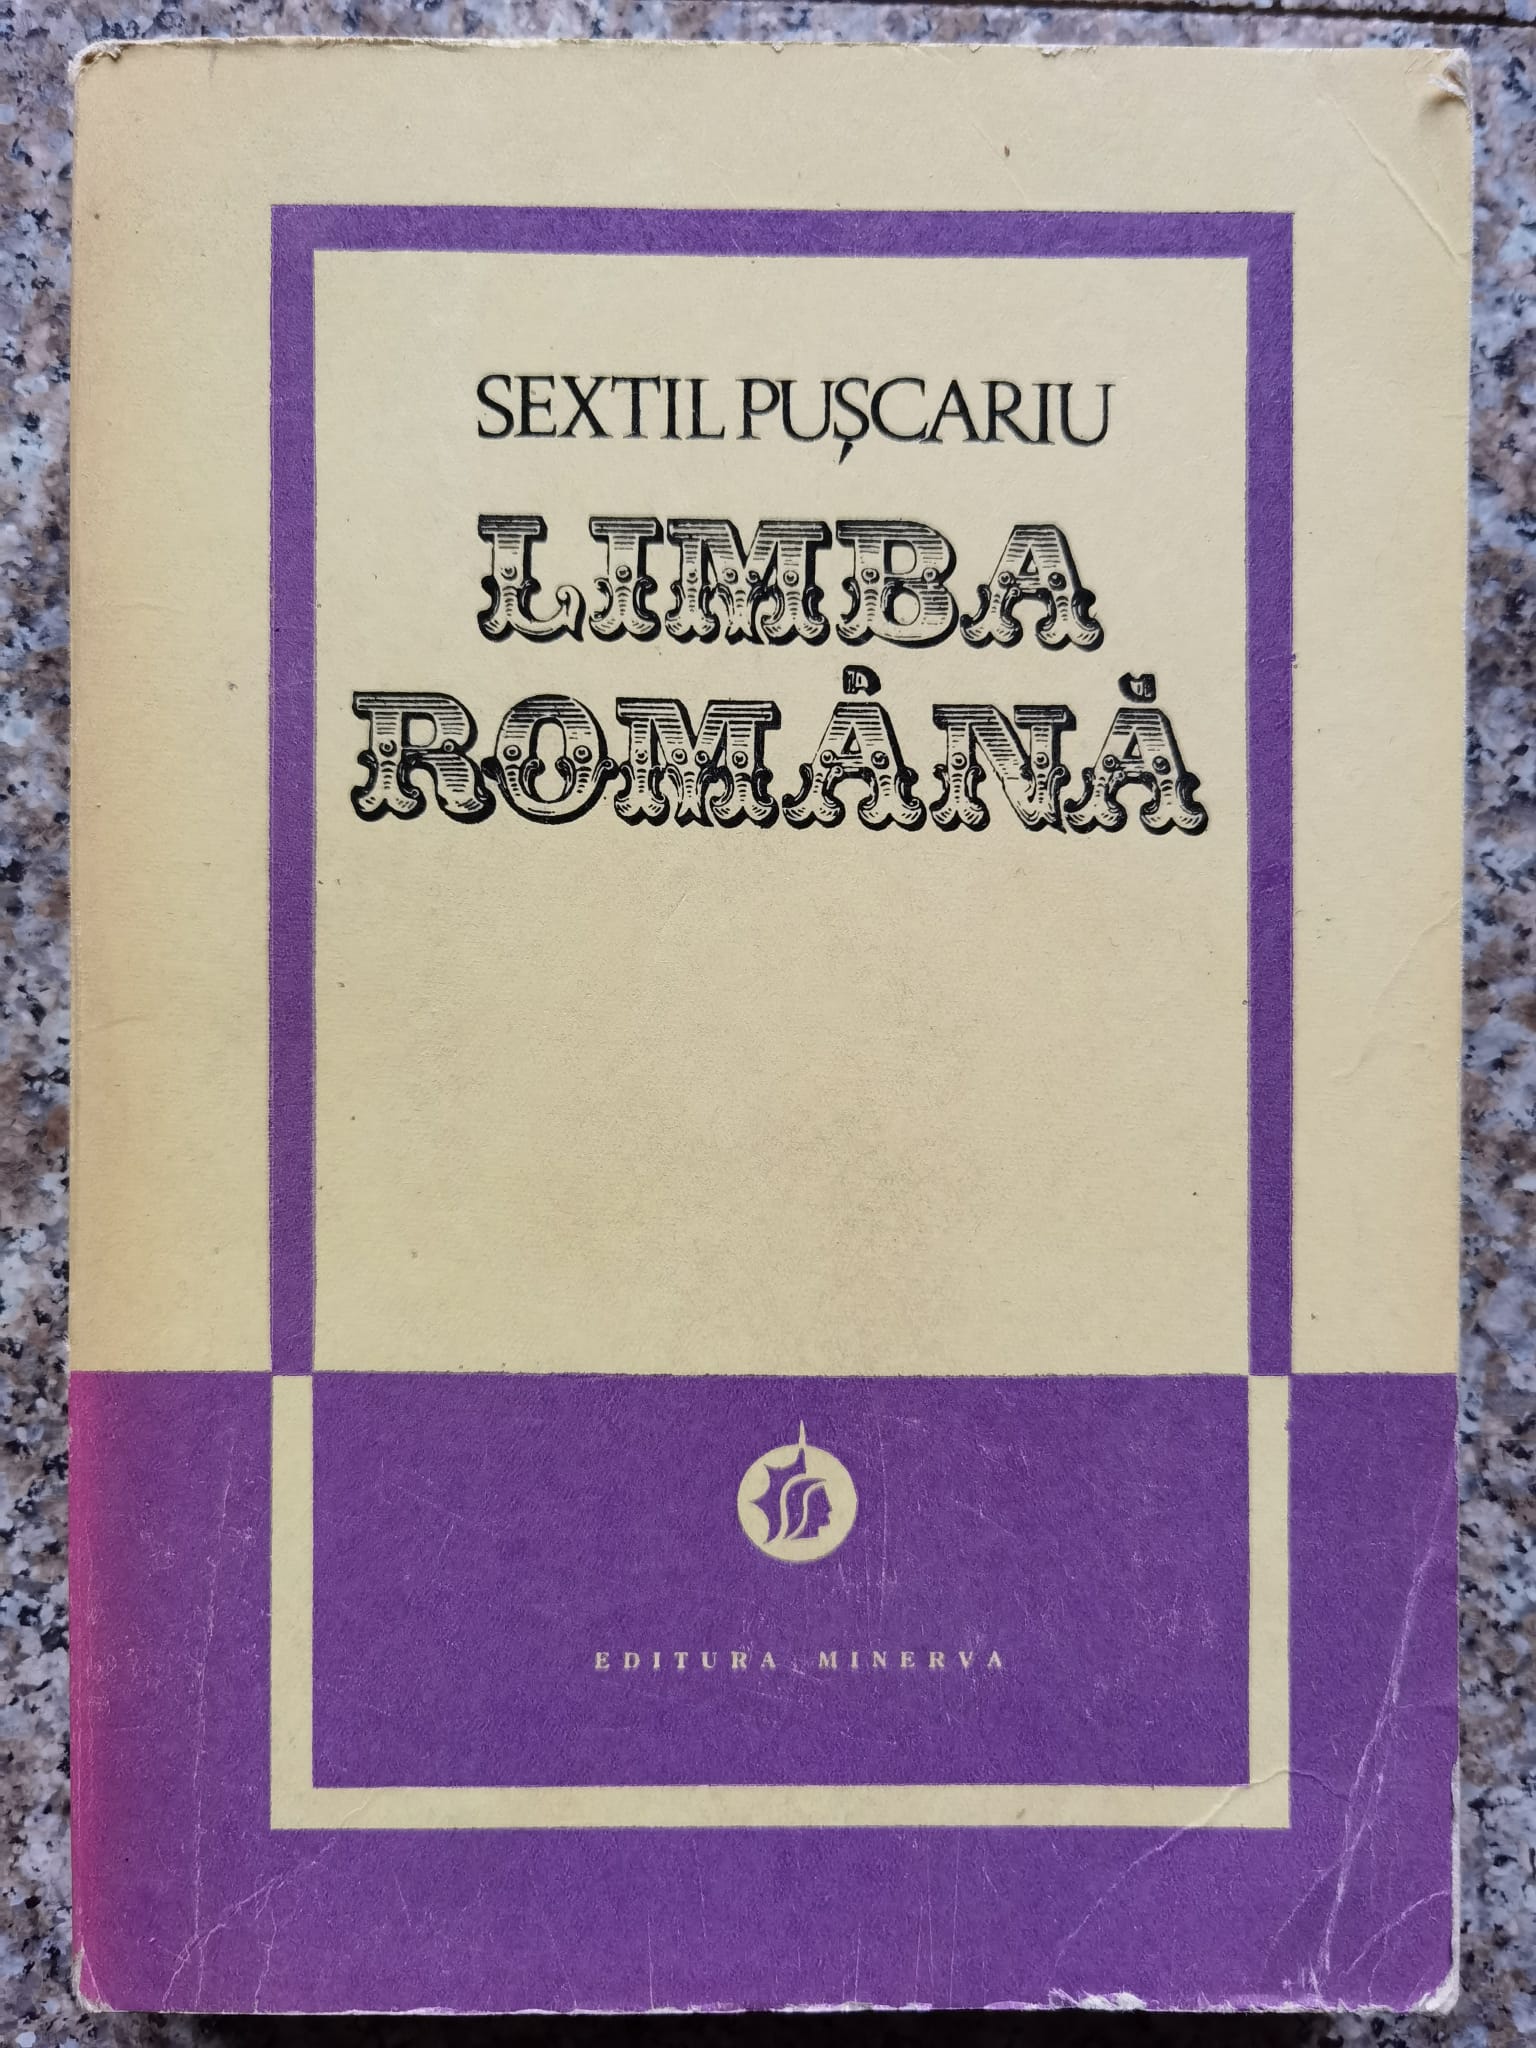 limba romana vol. 1                                                                                  sextil puscariu                                                                                     